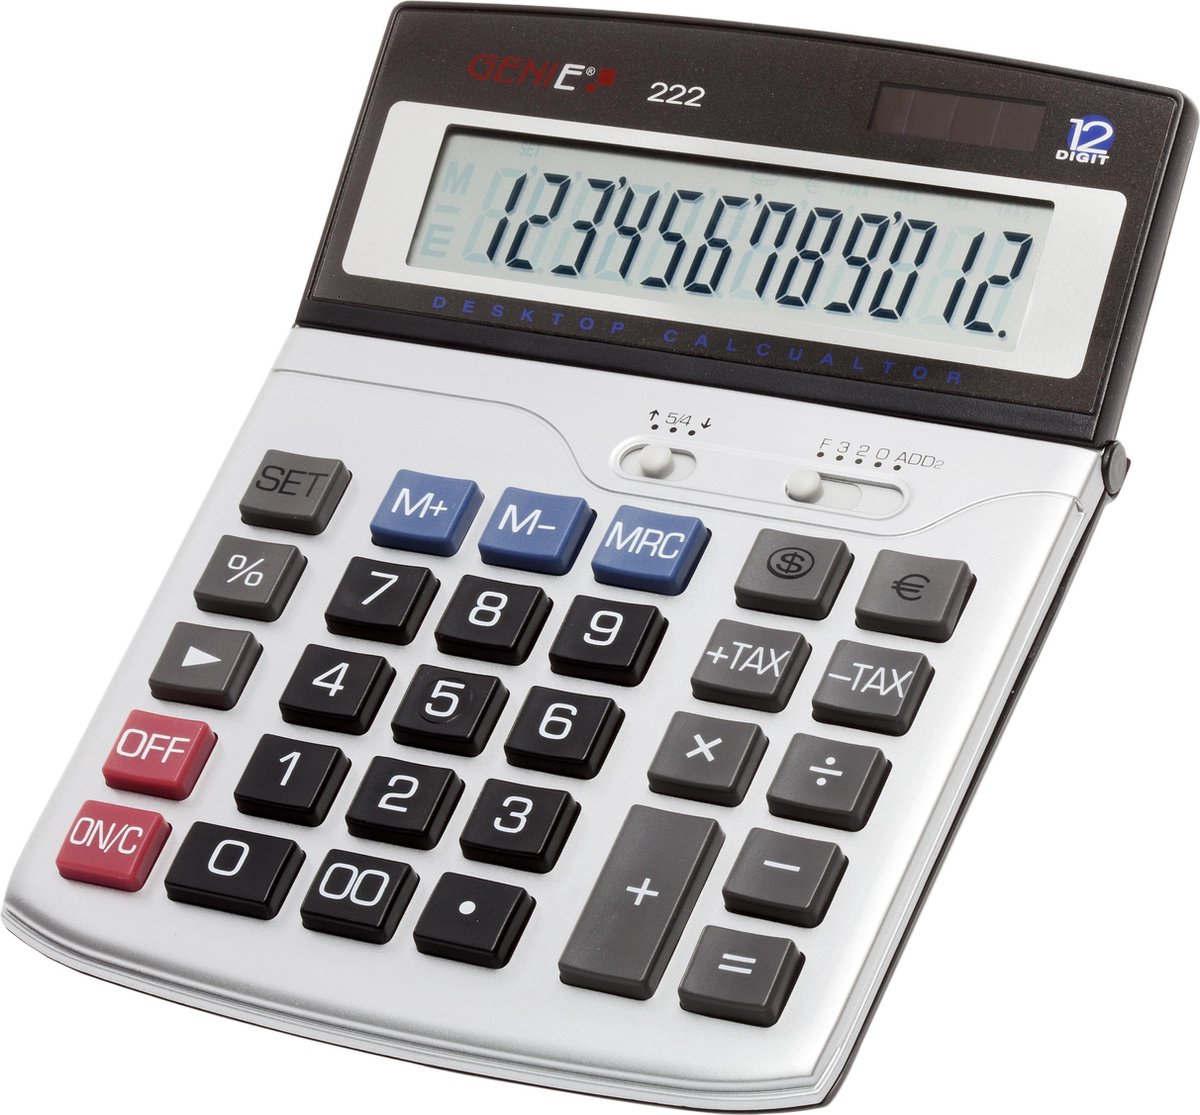 Genie 222 calculator